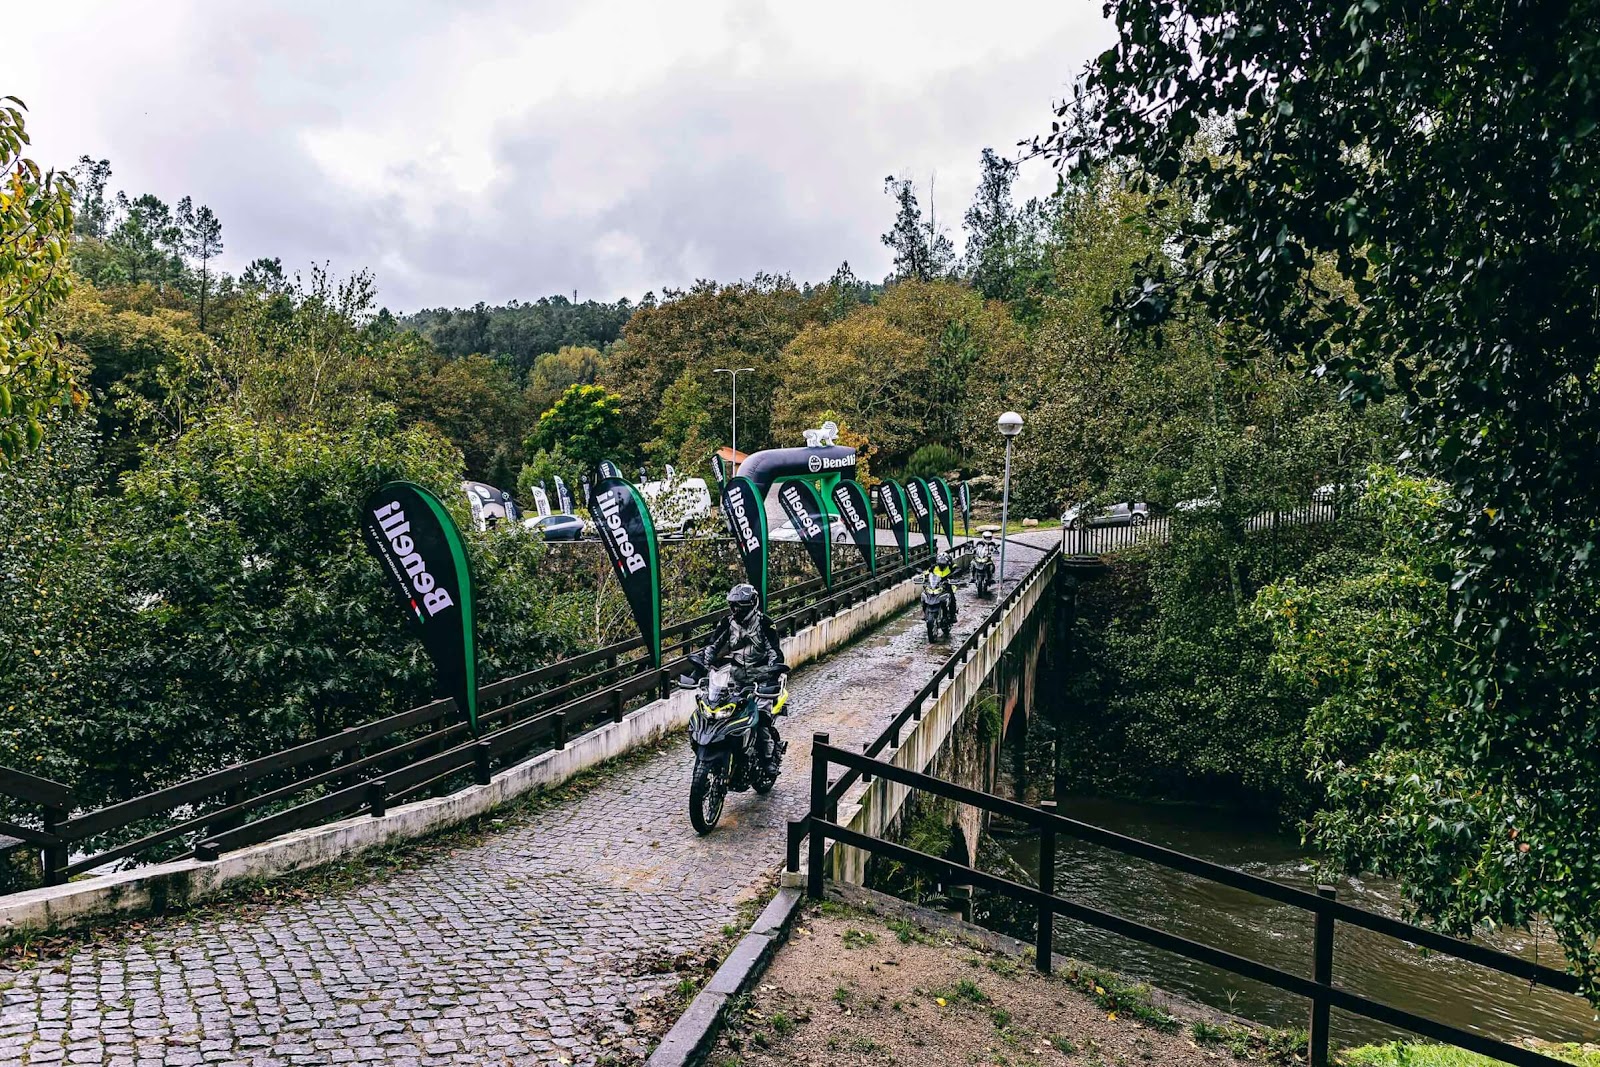 La sortie du magnifique Parque Molinológico de Oliveira de Azeméis